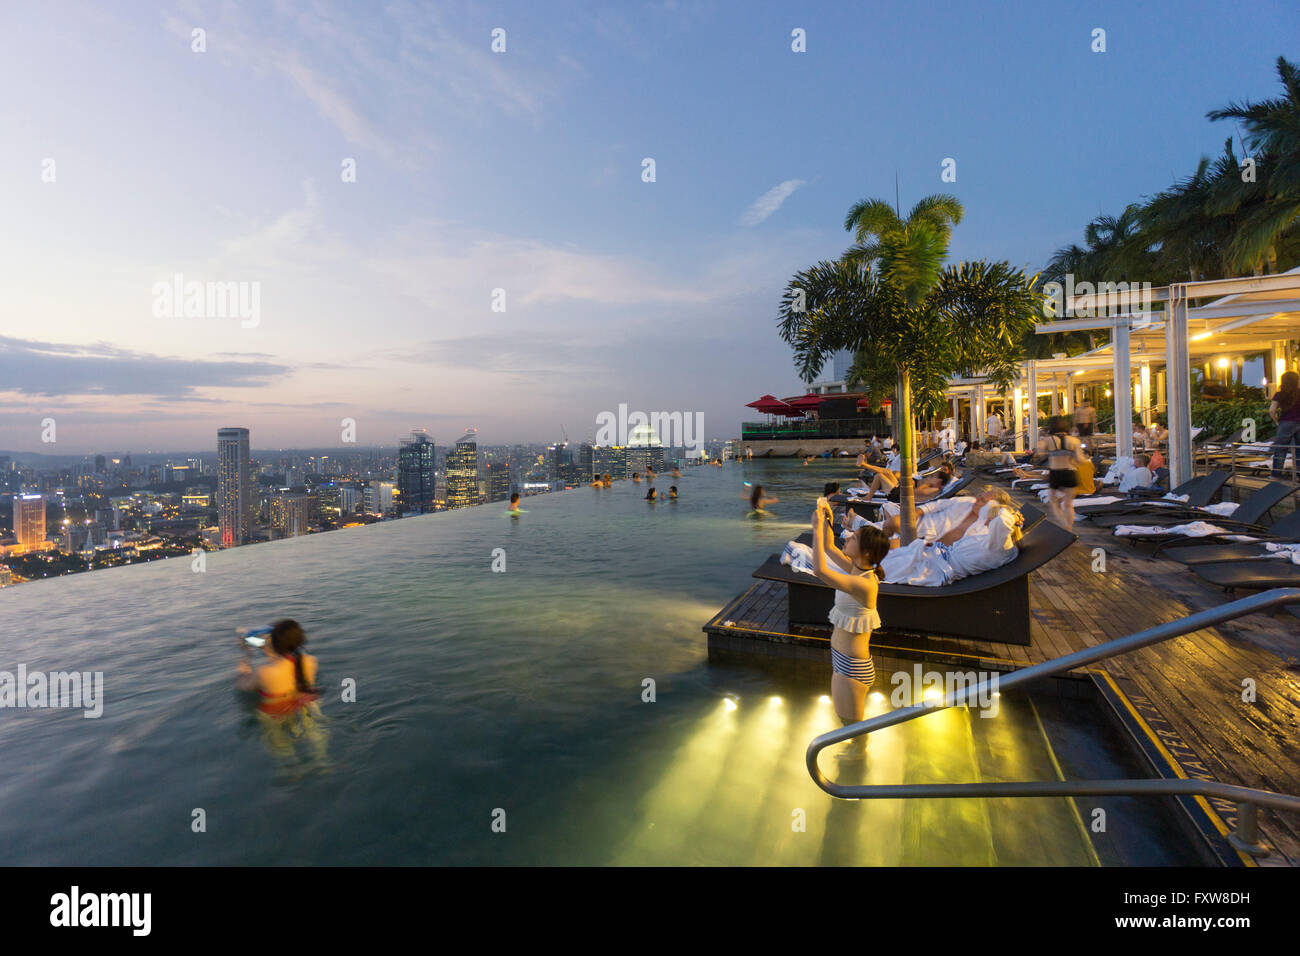 Marina Bay Sands , piscine à débordement, terrasse de toit, autoportraits, Marina Bay, Singapour, Singapour, Asie Southest, Banque D'Images